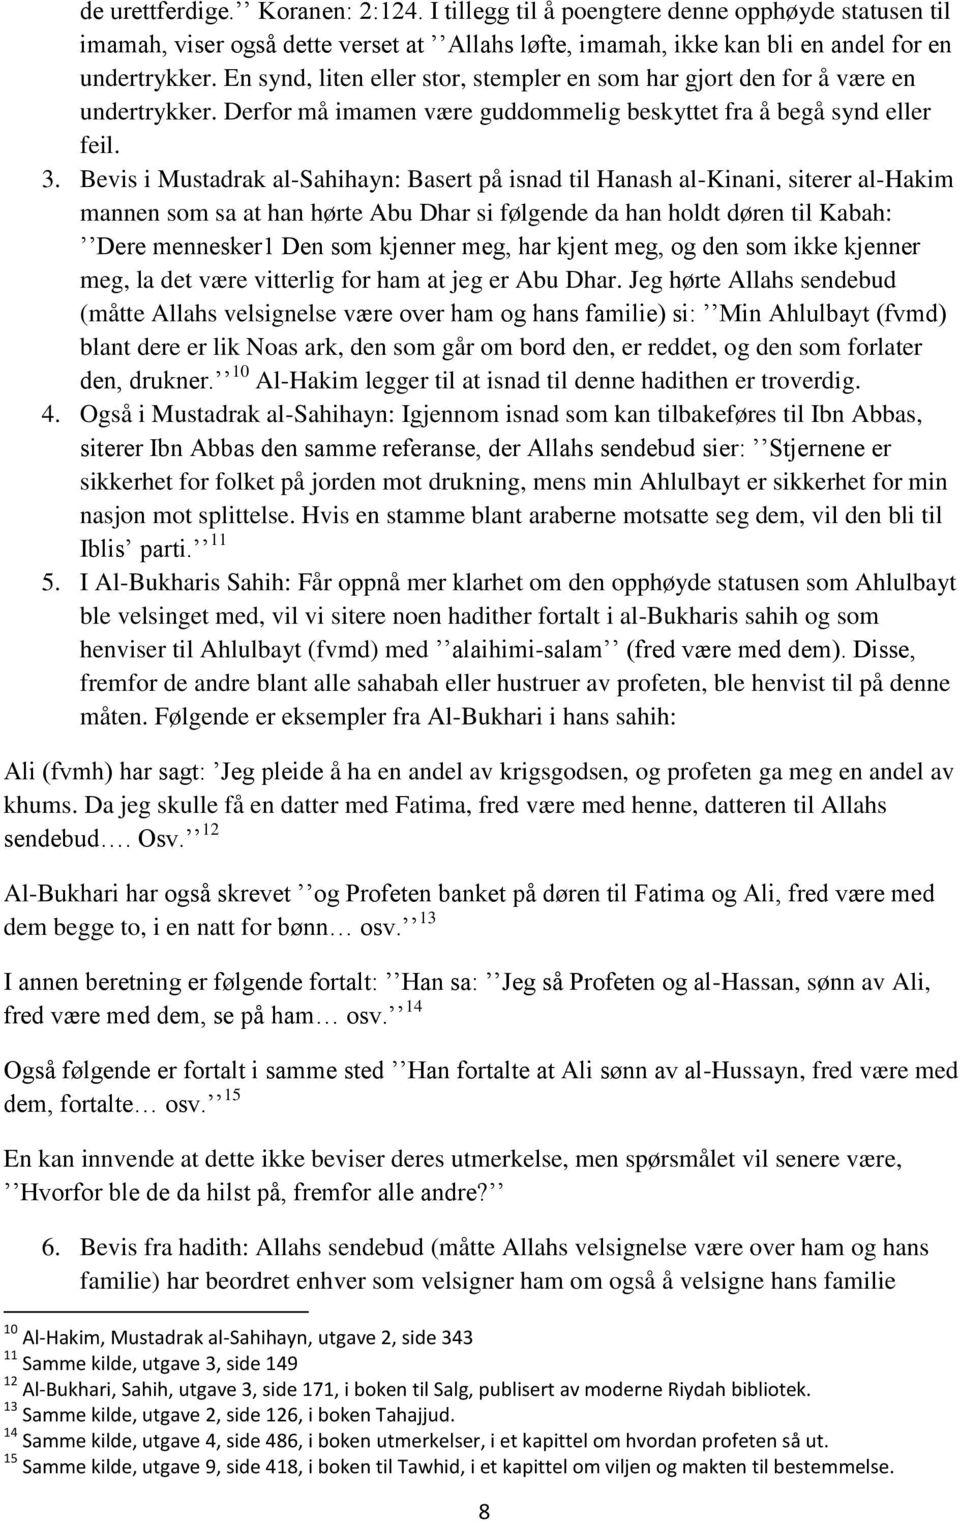 Bevis i Mustadrak al-sahihayn: Basert på isnad til Hanash al-kinani, siterer al-hakim mannen som sa at han hørte Abu Dhar si følgende da han holdt døren til Kabah: Dere mennesker1 Den som kjenner